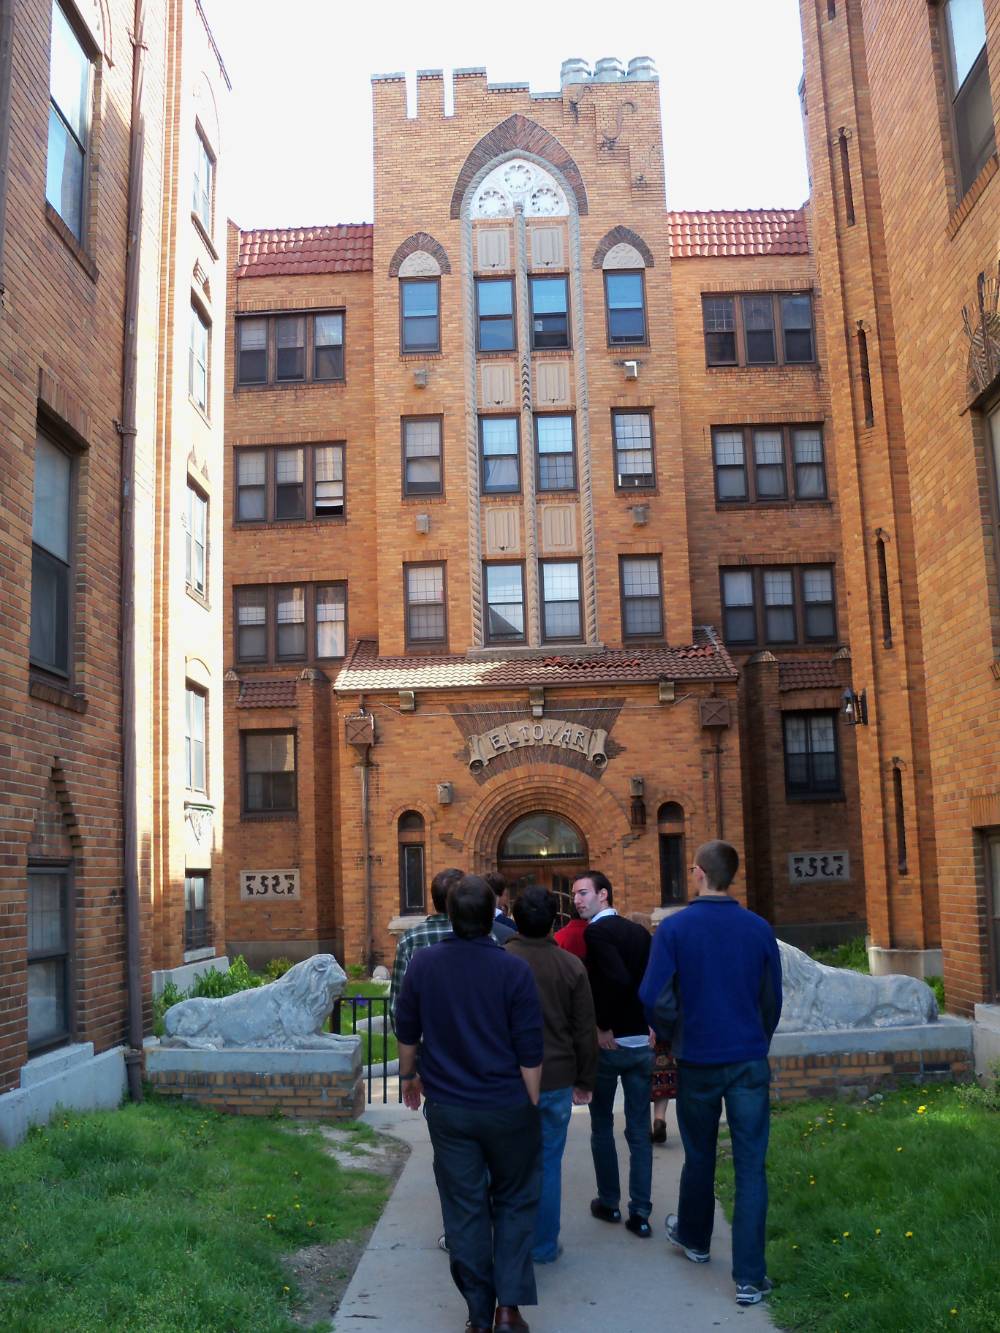 Students visit the El Tovar building in Detroit.